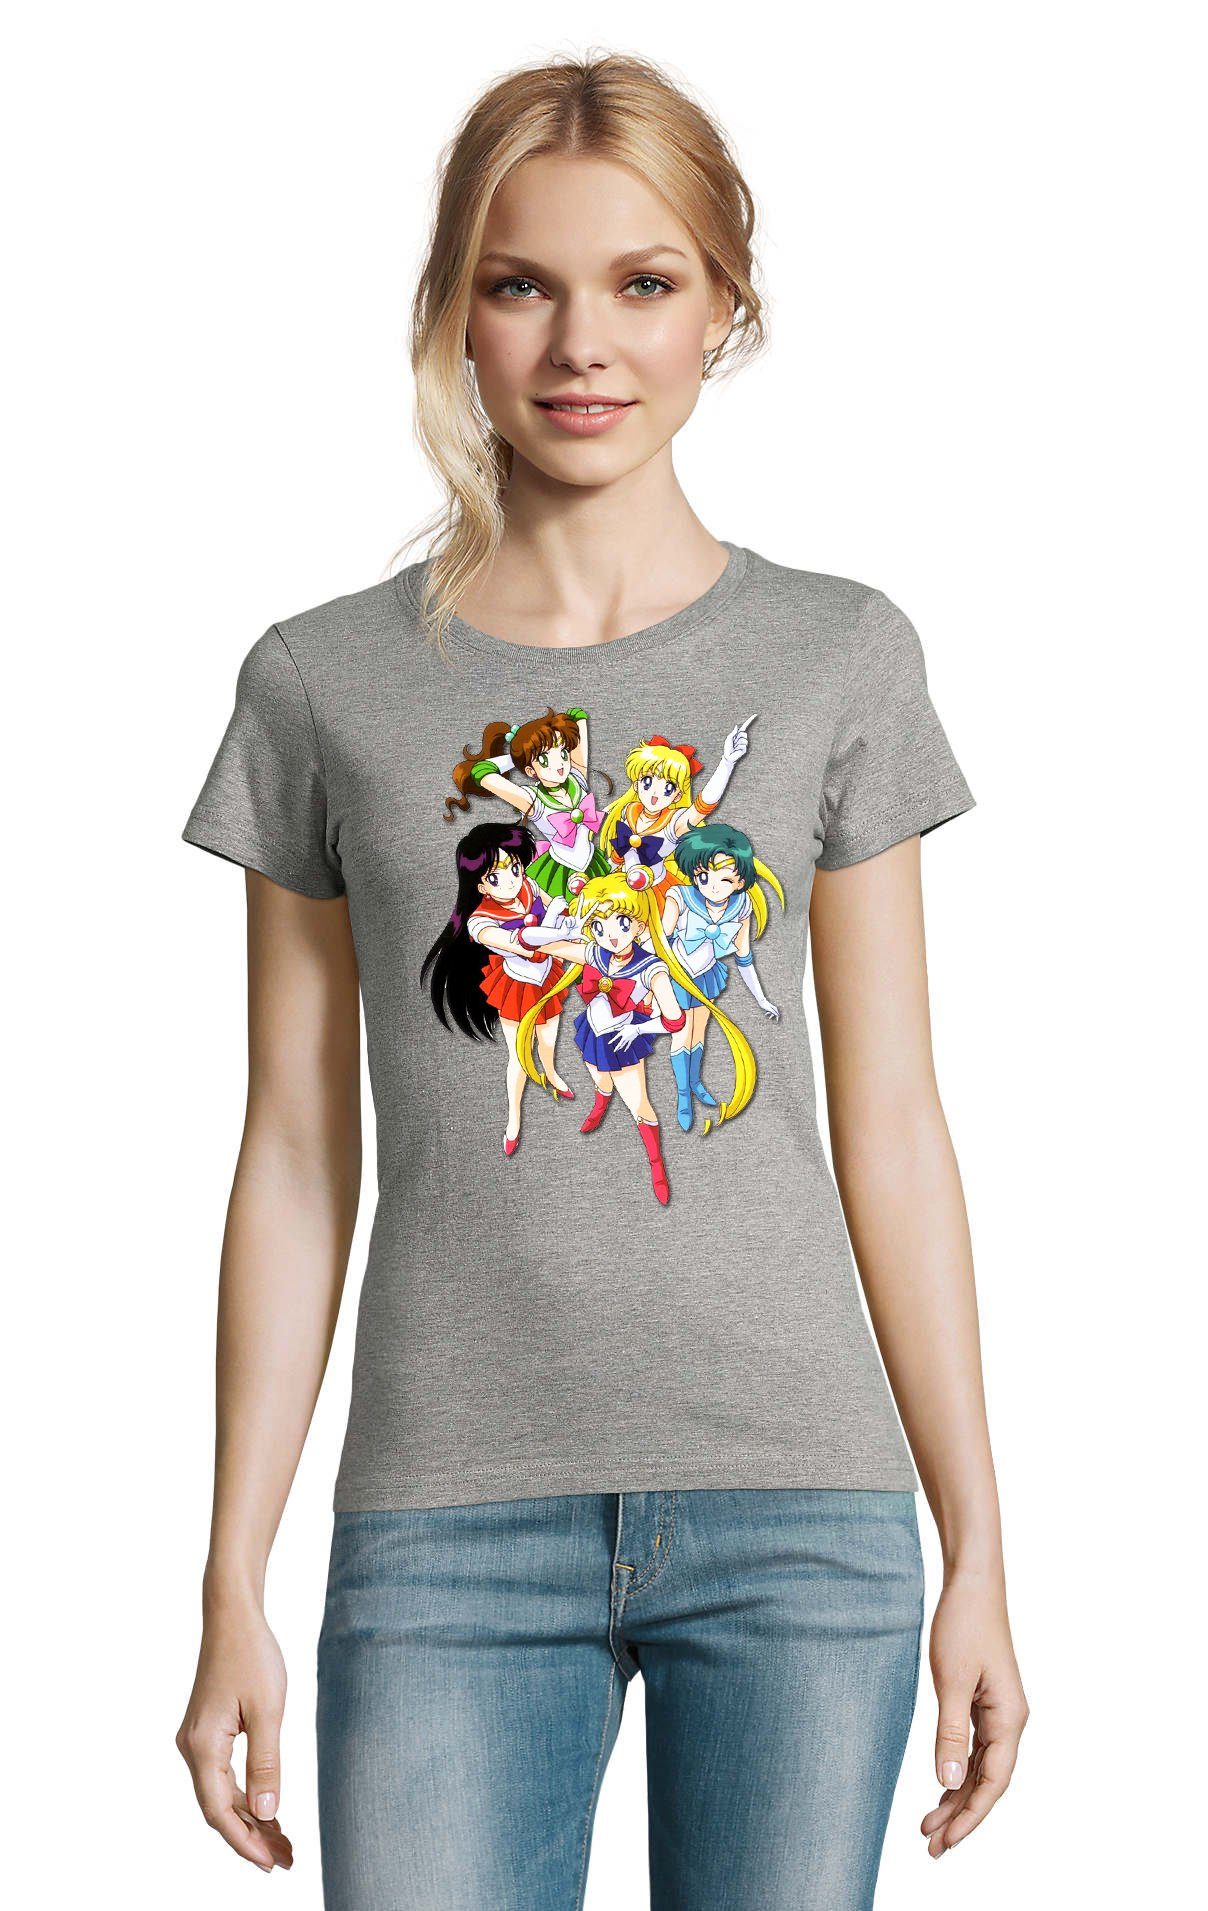 Blondie & Brownie T-Shirt Damen Fun Comic Sailor Moon and Friends Anime Manga Grau